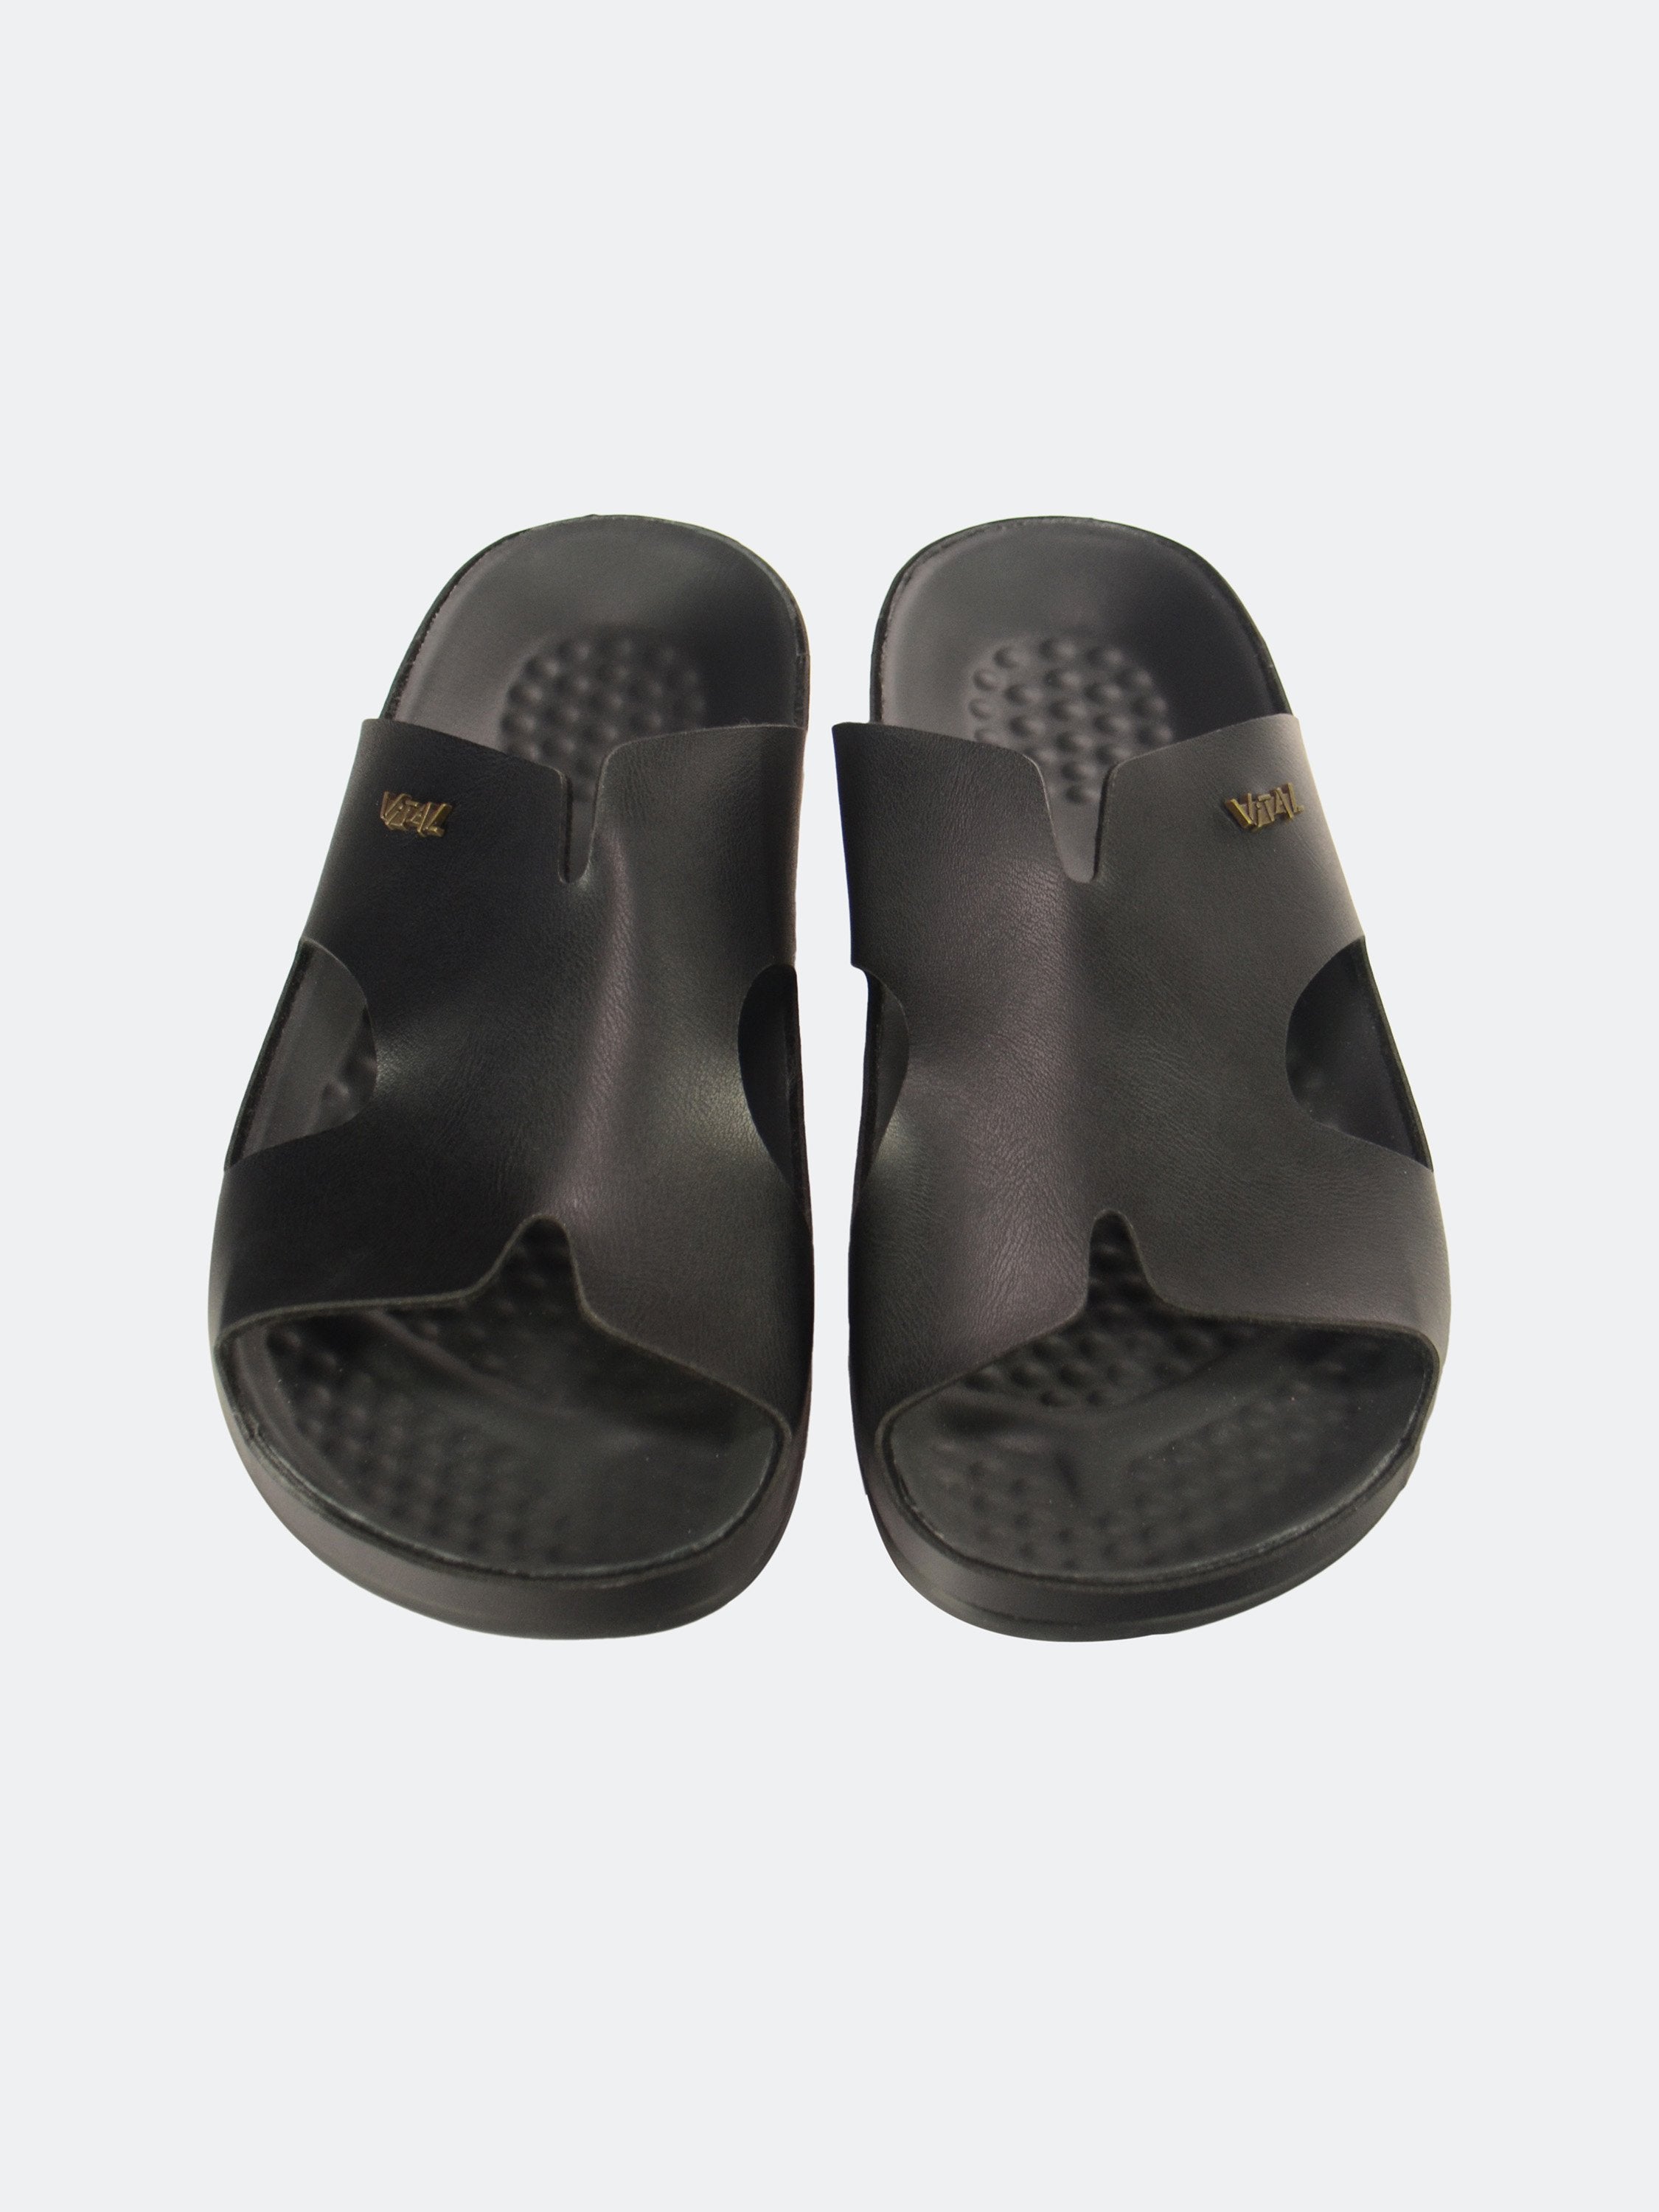 Vital Men's Slip On Leather Sandals #color_Black